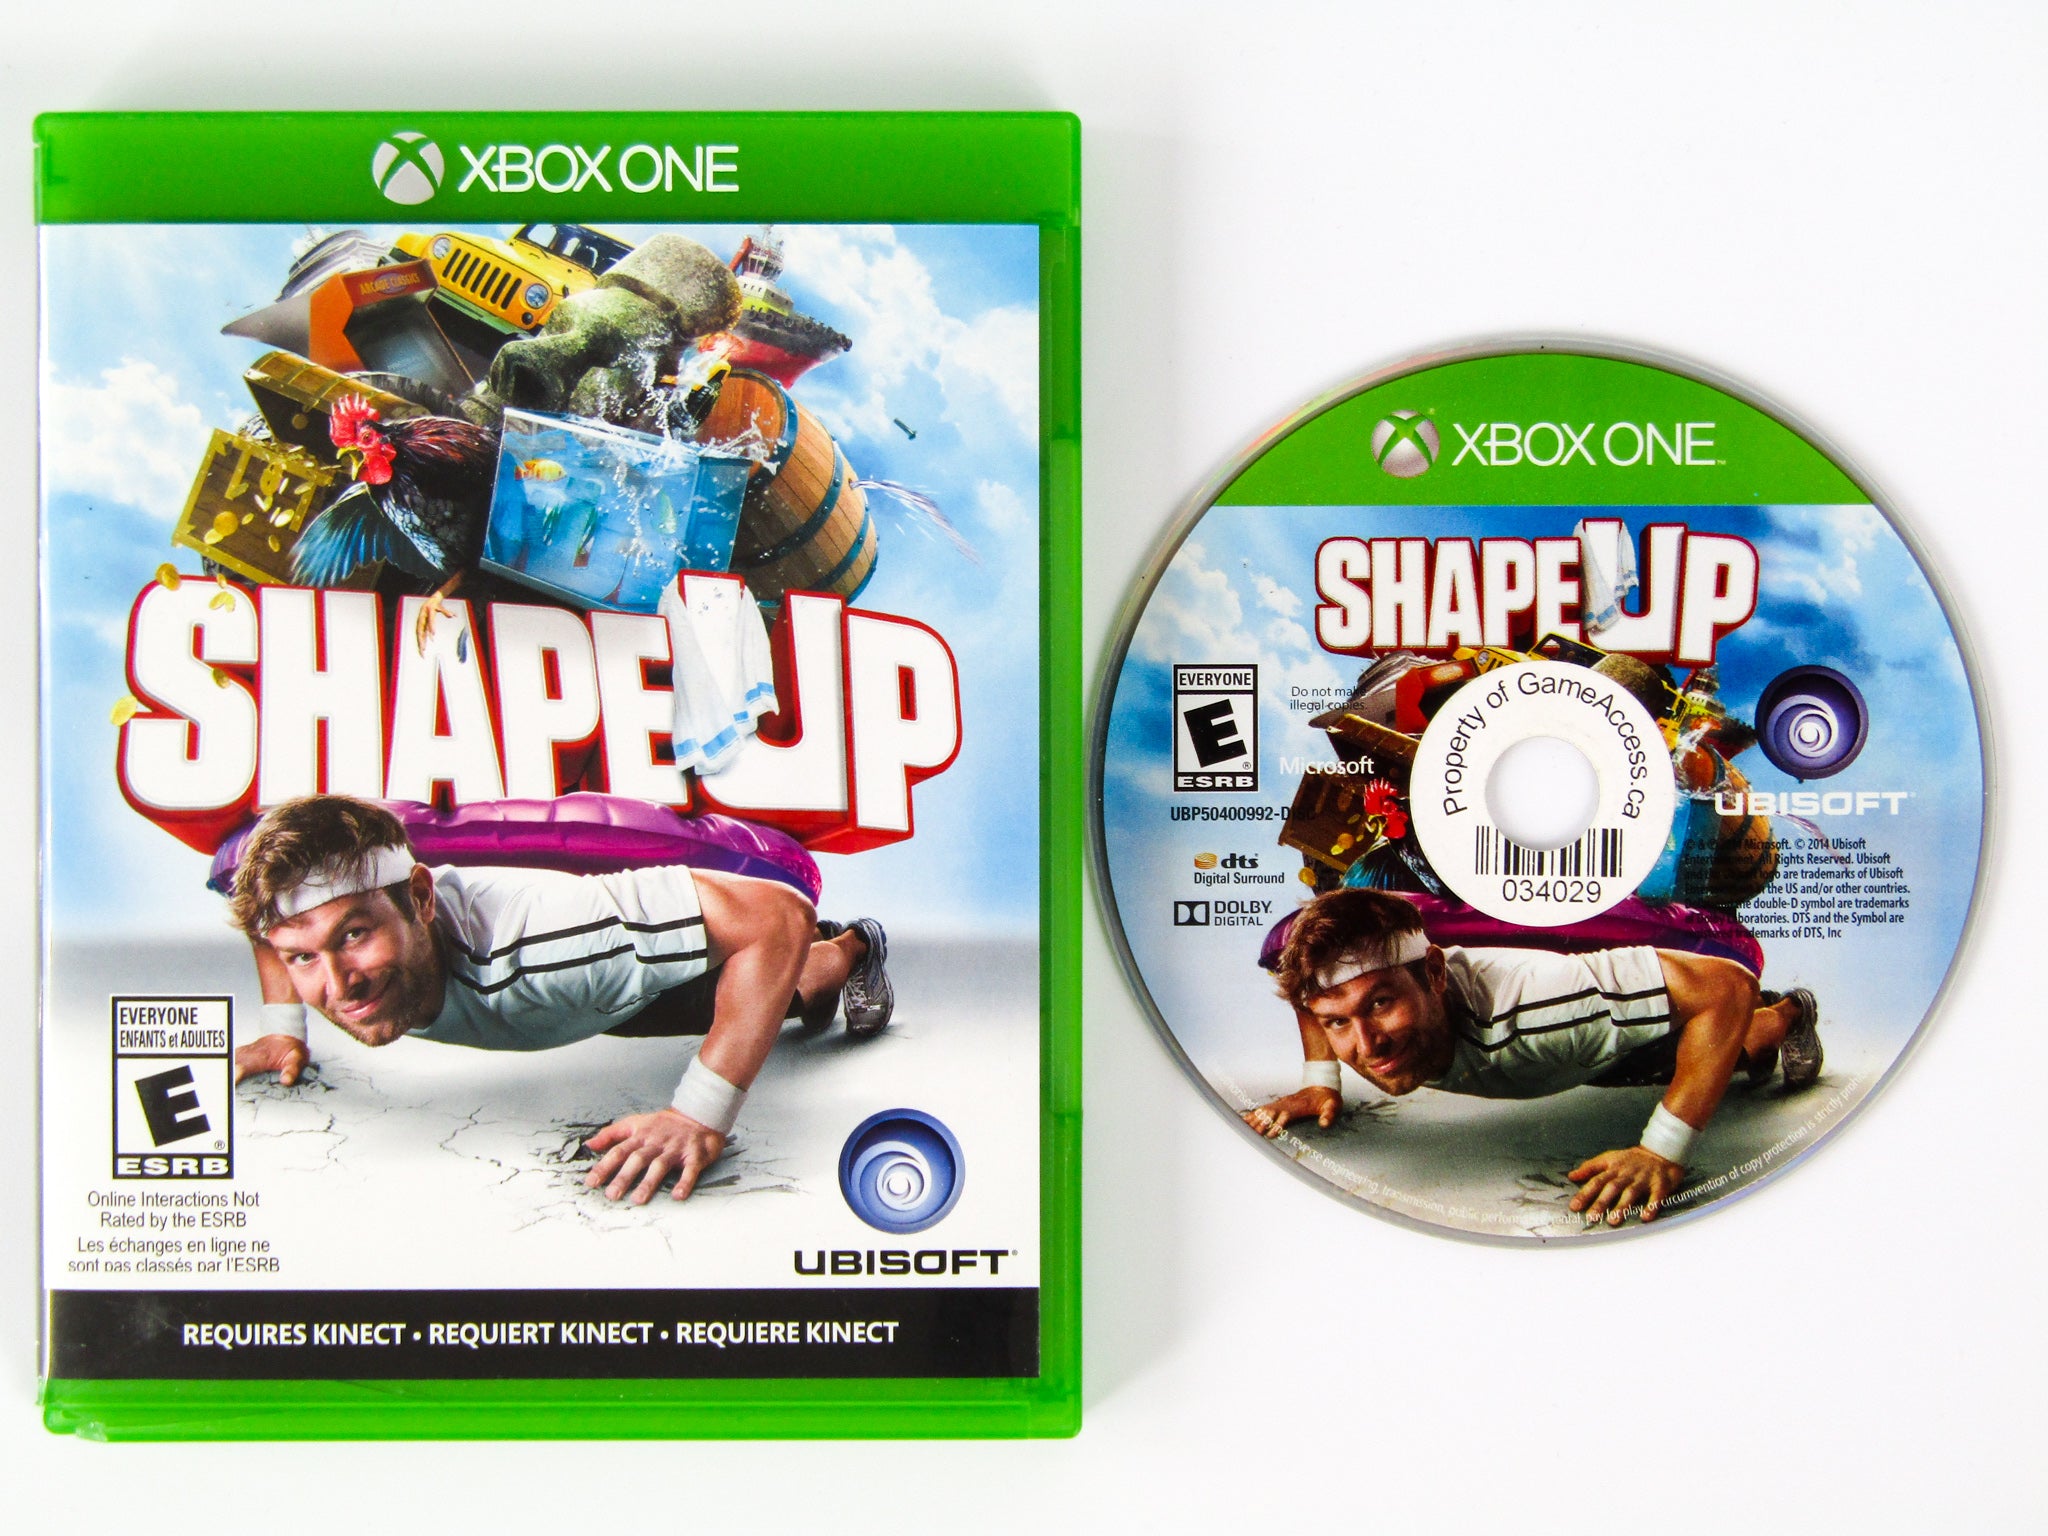 Jogo Shape Up - Xbox One